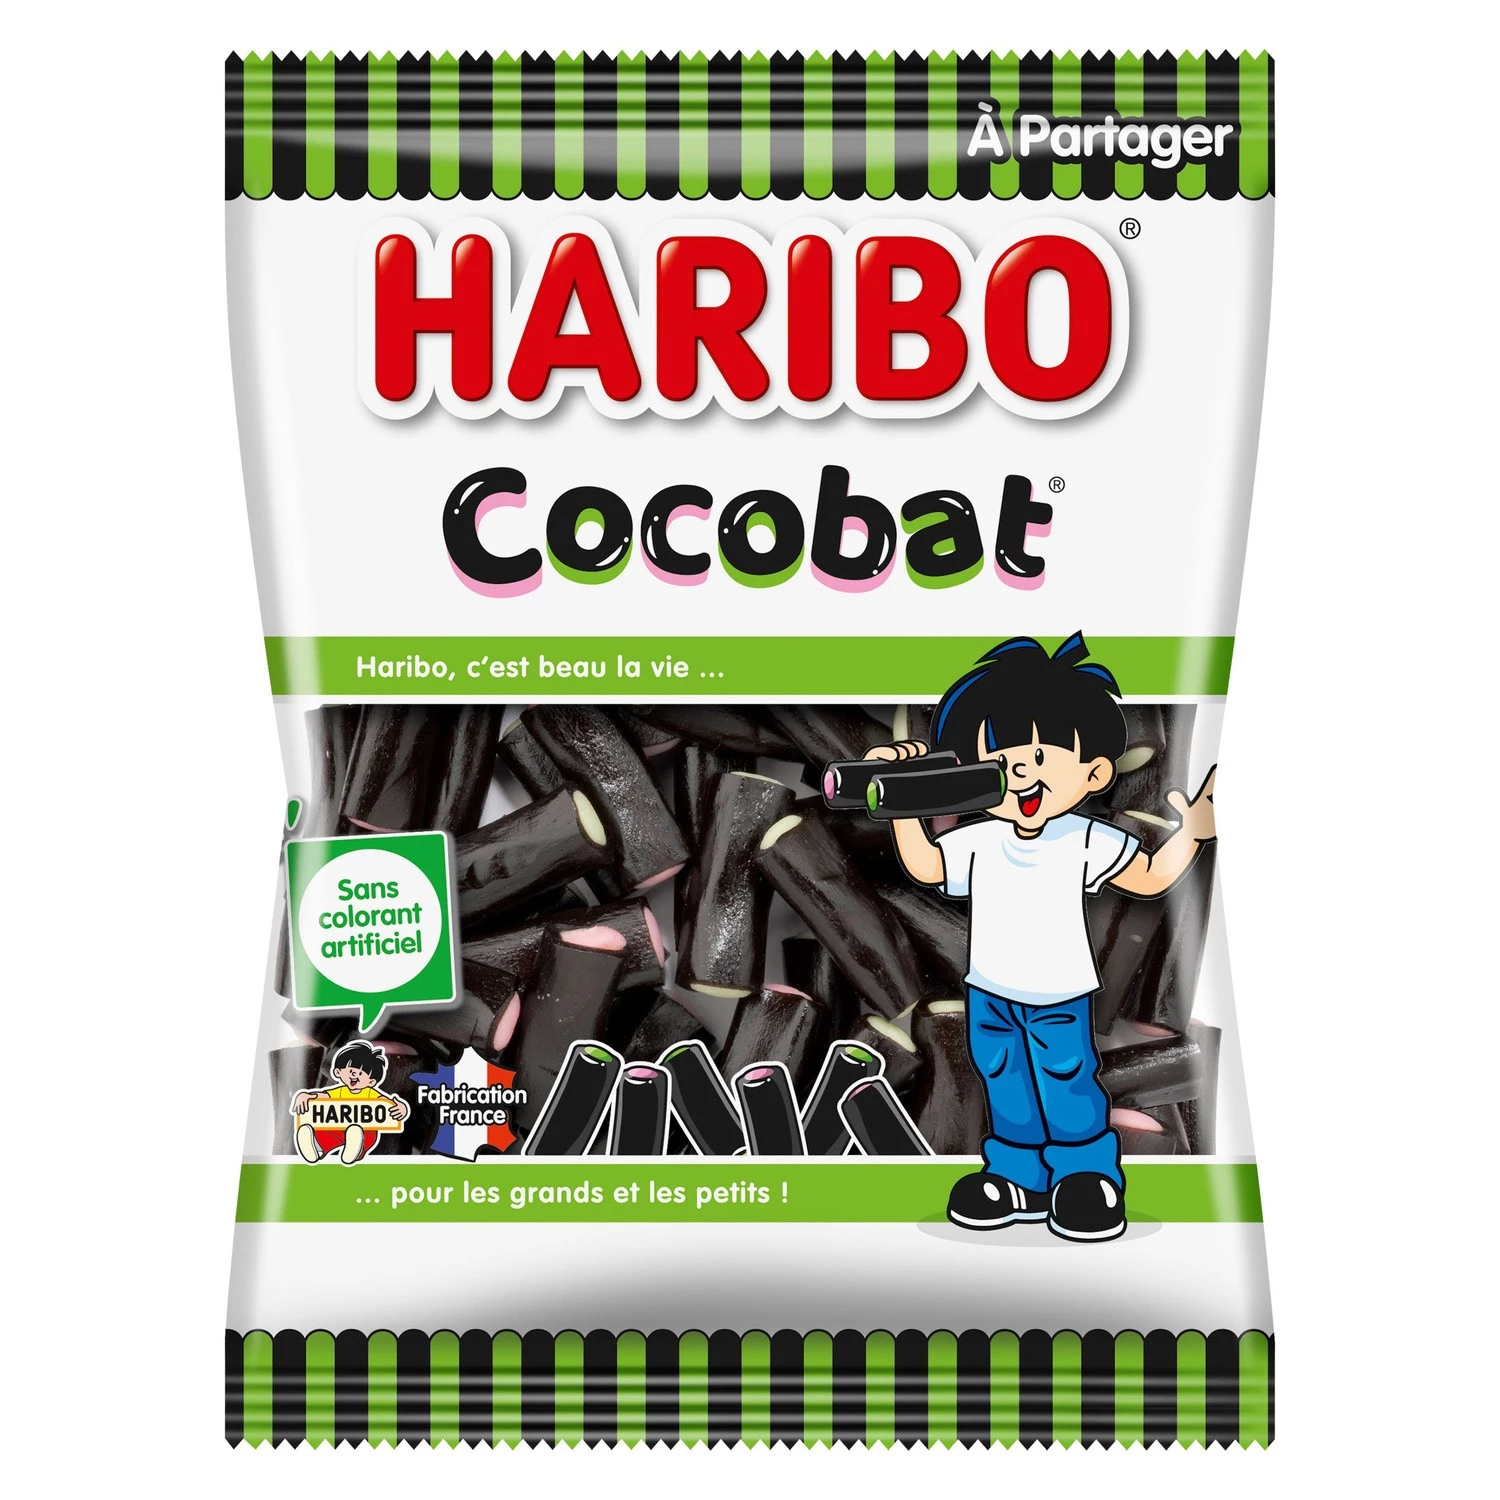 Caramelos de cocobata; 300g - HARIBO